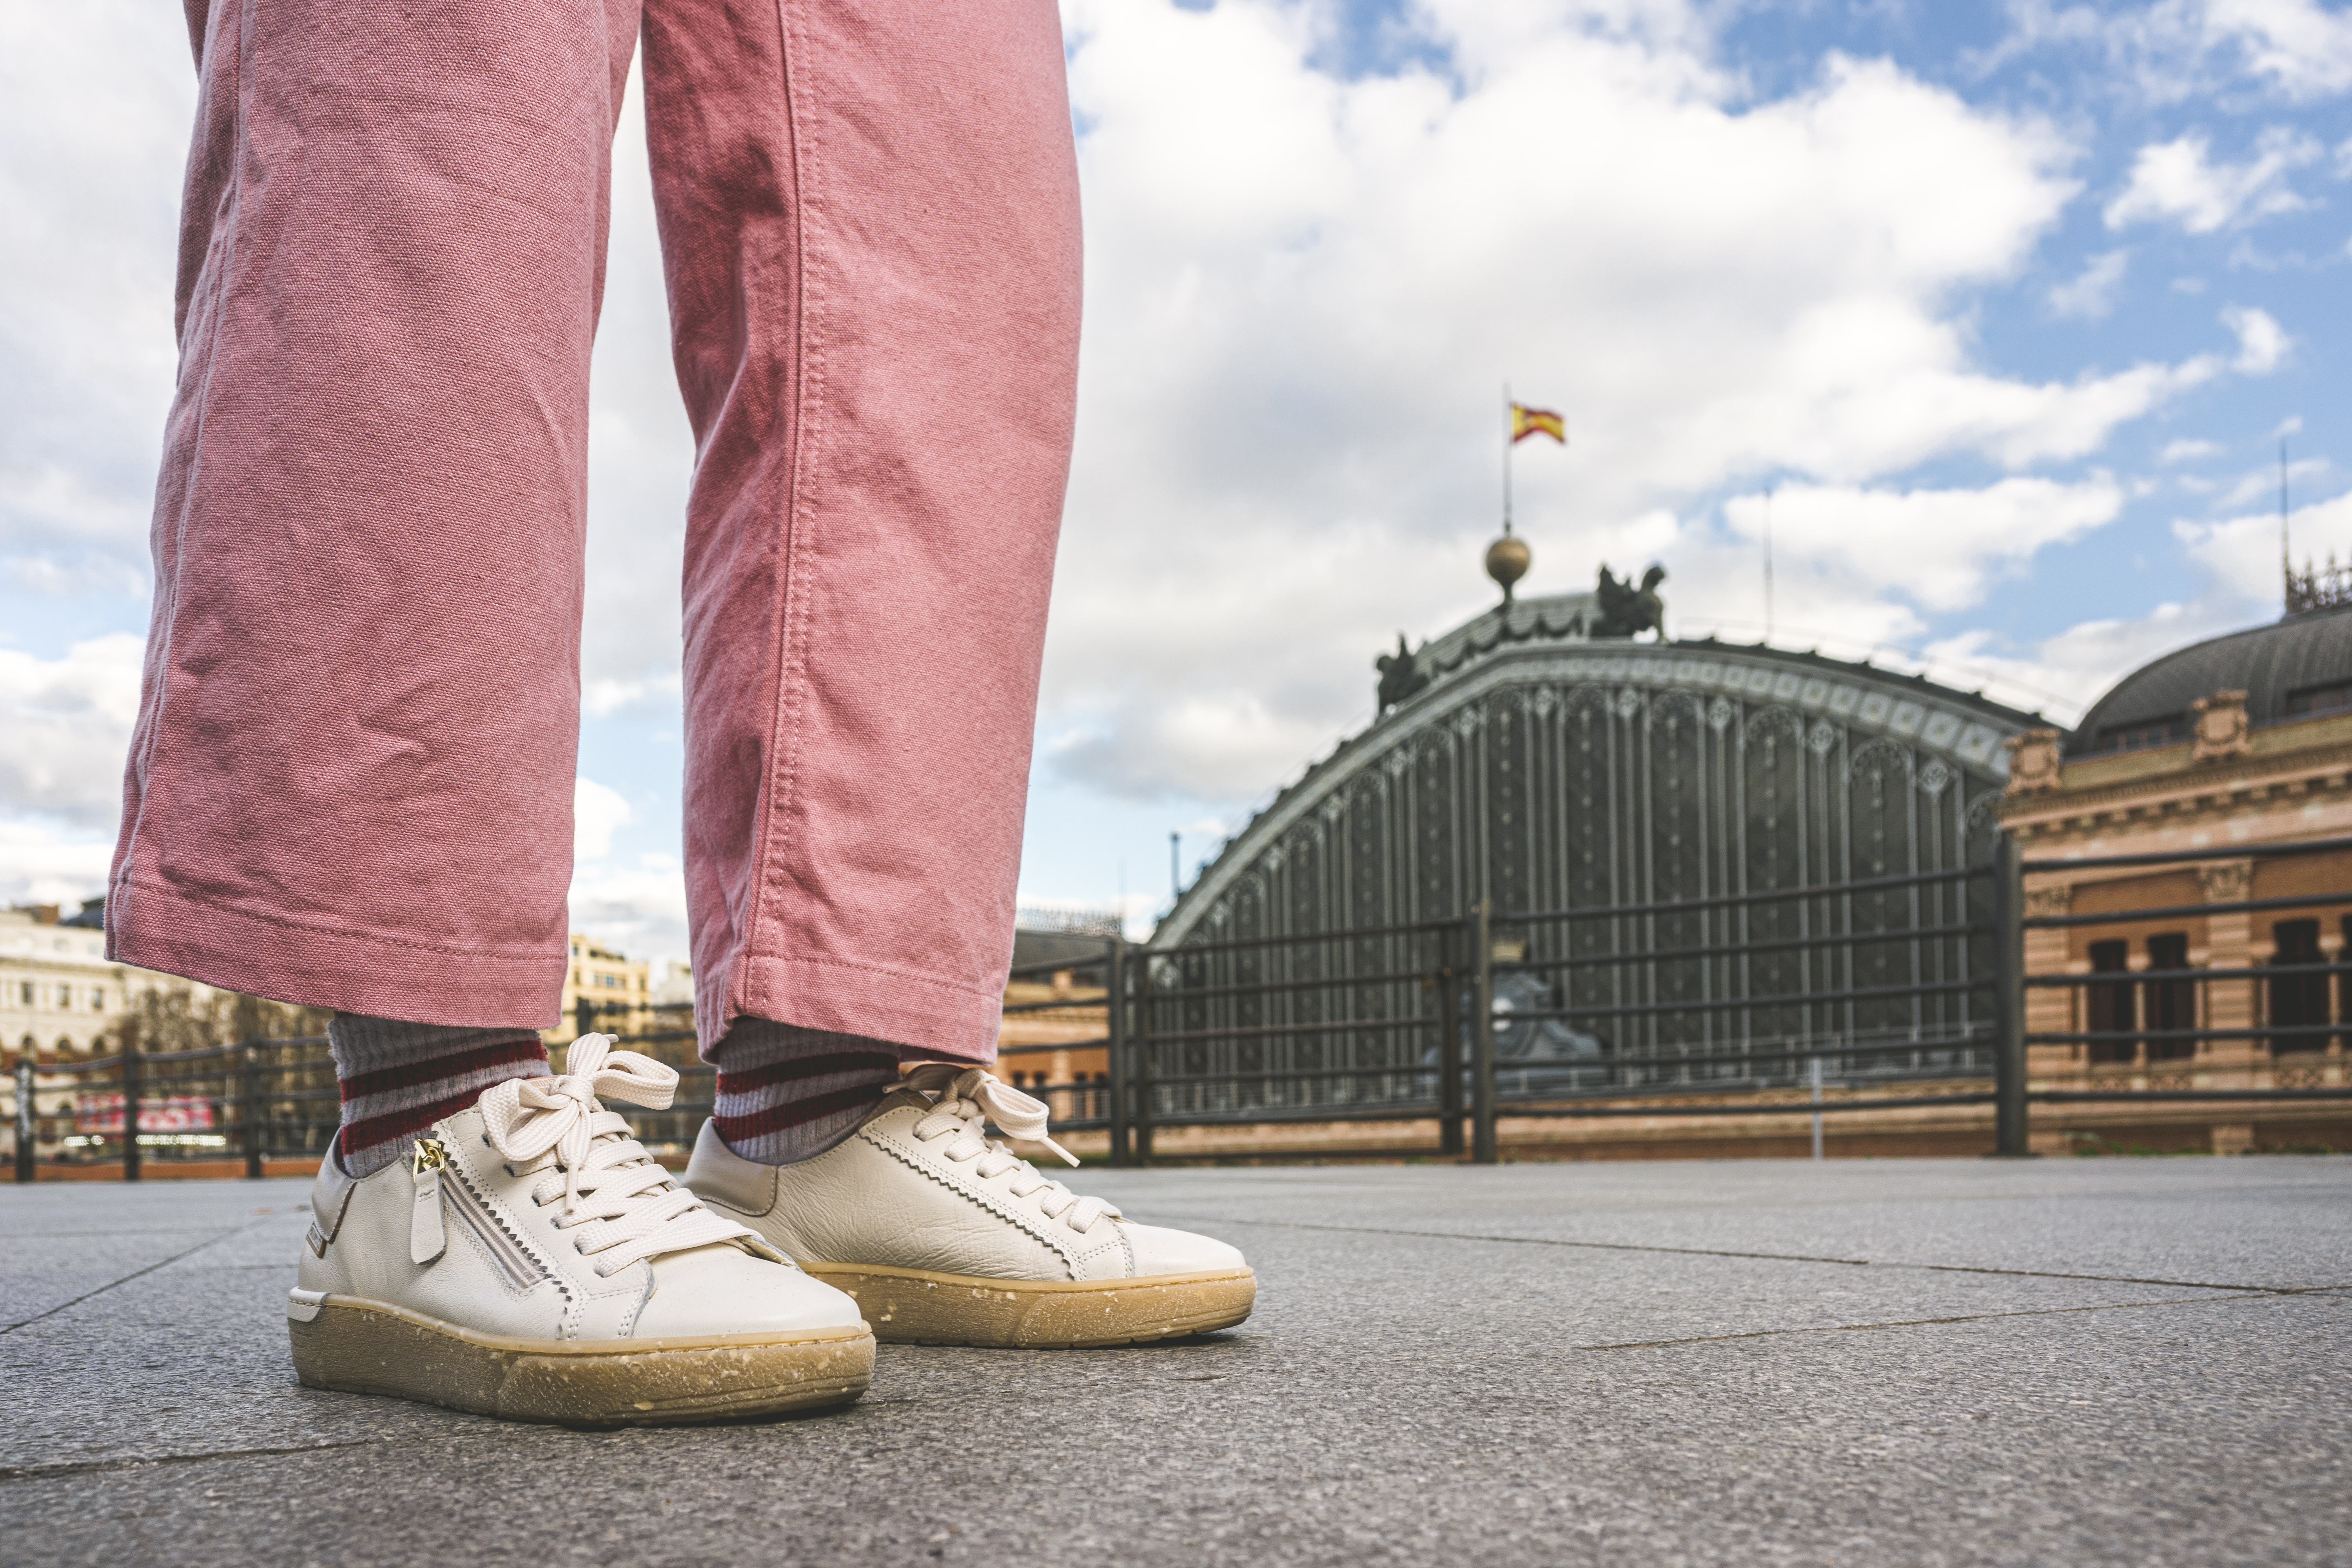 Imagen recortada de los pies de Lara, paseando por la calle. Lleva un pantalón rosa y unas deportivas en color blanco, con suela en color caramelo.